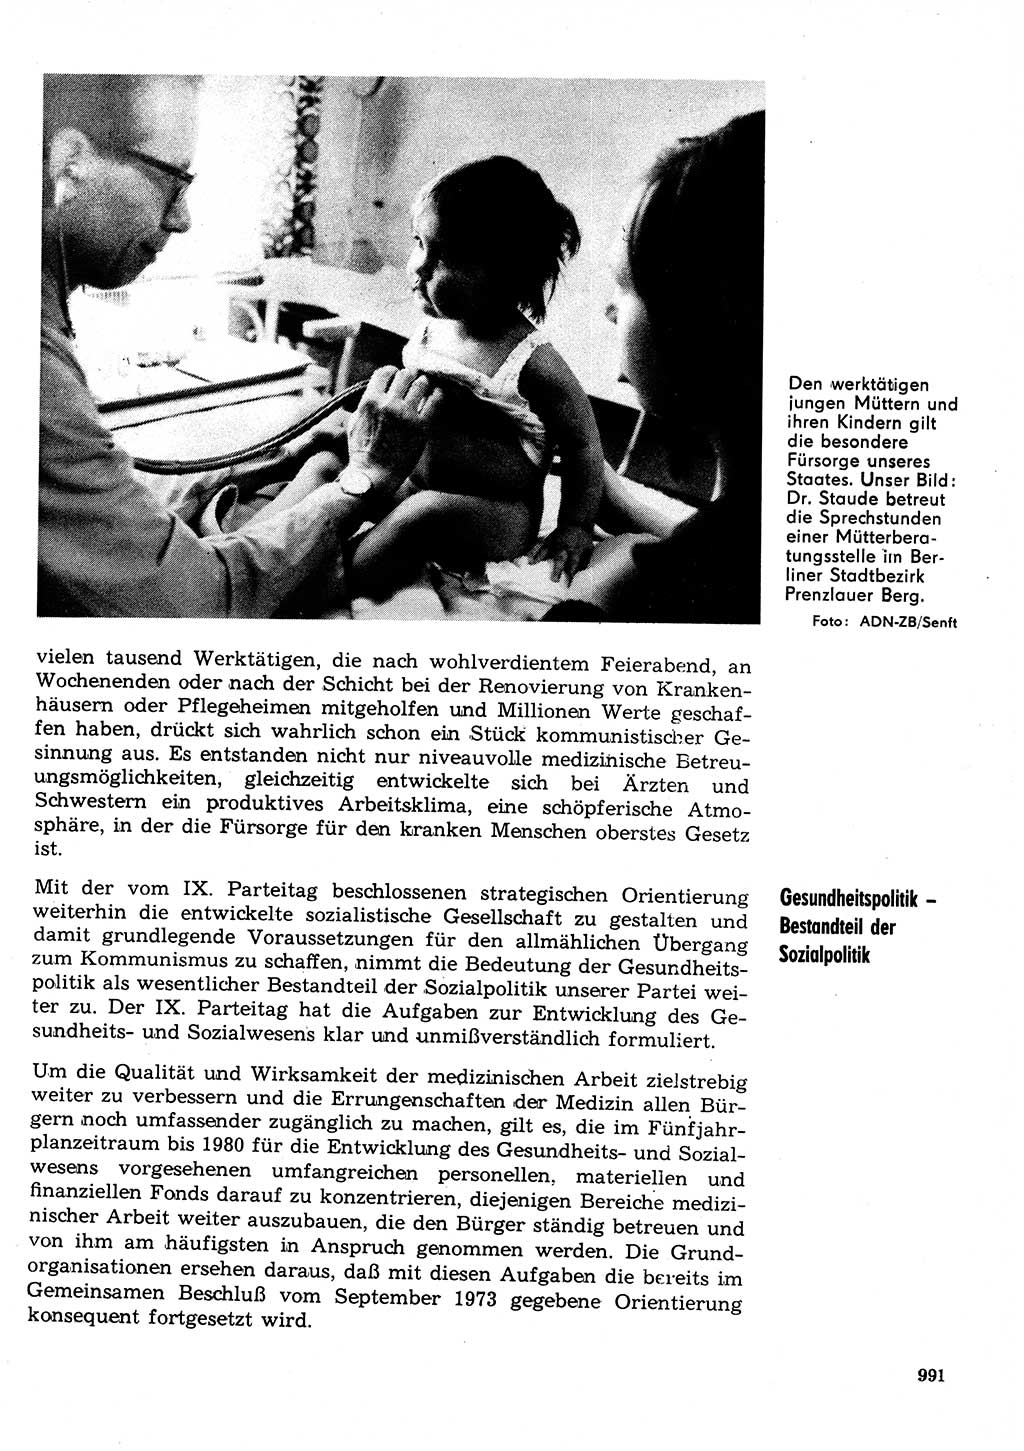 Neuer Weg (NW), Organ des Zentralkomitees (ZK) der SED (Sozialistische Einheitspartei Deutschlands) für Fragen des Parteilebens, 31. Jahrgang [Deutsche Demokratische Republik (DDR)] 1976, Seite 991 (NW ZK SED DDR 1976, S. 991)